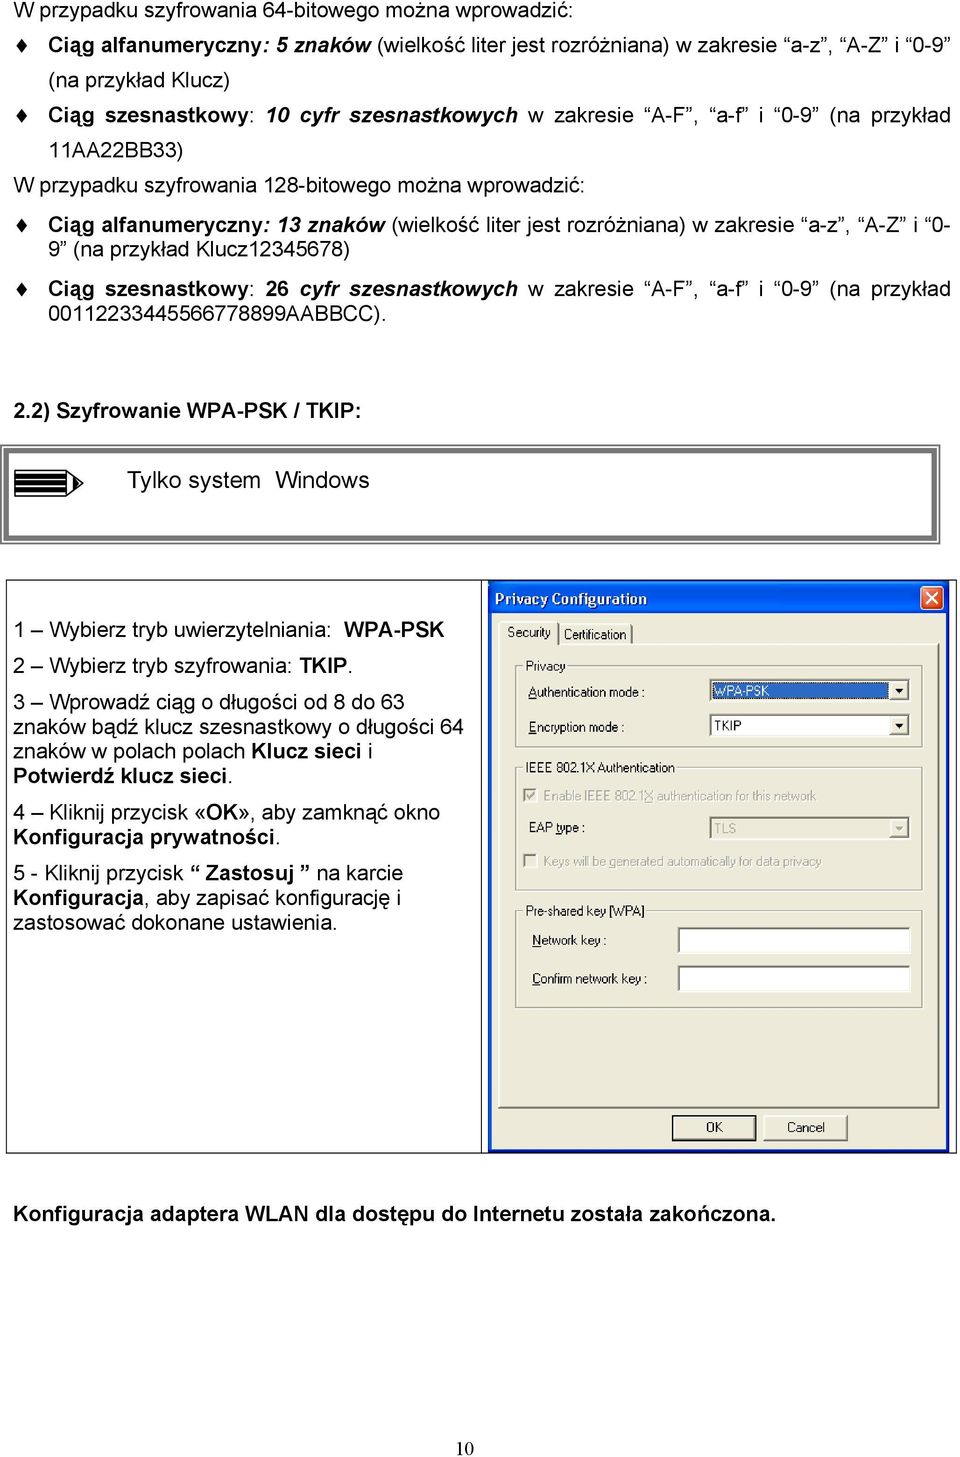 a-z, A-Z i 0-9 (na przykład Klucz12345678) Ciąg szesnastkowy: 26 cyfr szesnastkowych w zakresie A-F, a-f i 0-9 (na przykład 00112233445566778899AABBCC). 2.2) Szyfrowanie WPA-PSK / TKIP: Tylko system Windows 1 Wybierz tryb uwierzytelniania: WPA-PSK 2 Wybierz tryb szyfrowania: TKIP.